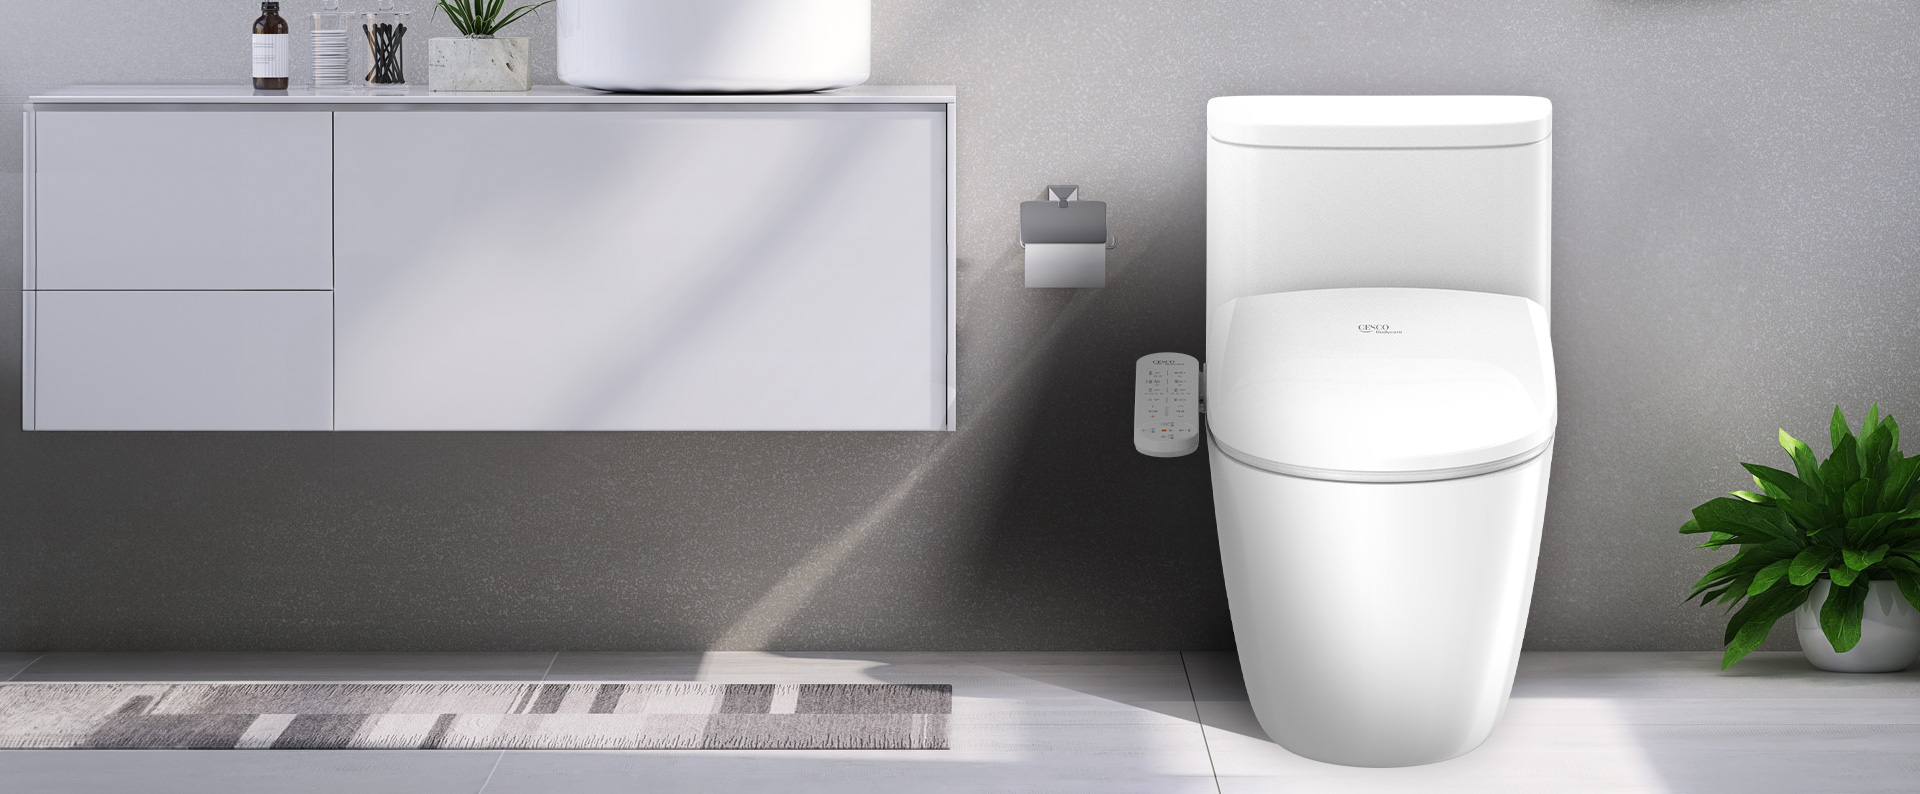 벽걸이형 세면대와 세스코(CESCO) 비데 기능이 있는 변기가 있는 욕실입니다.